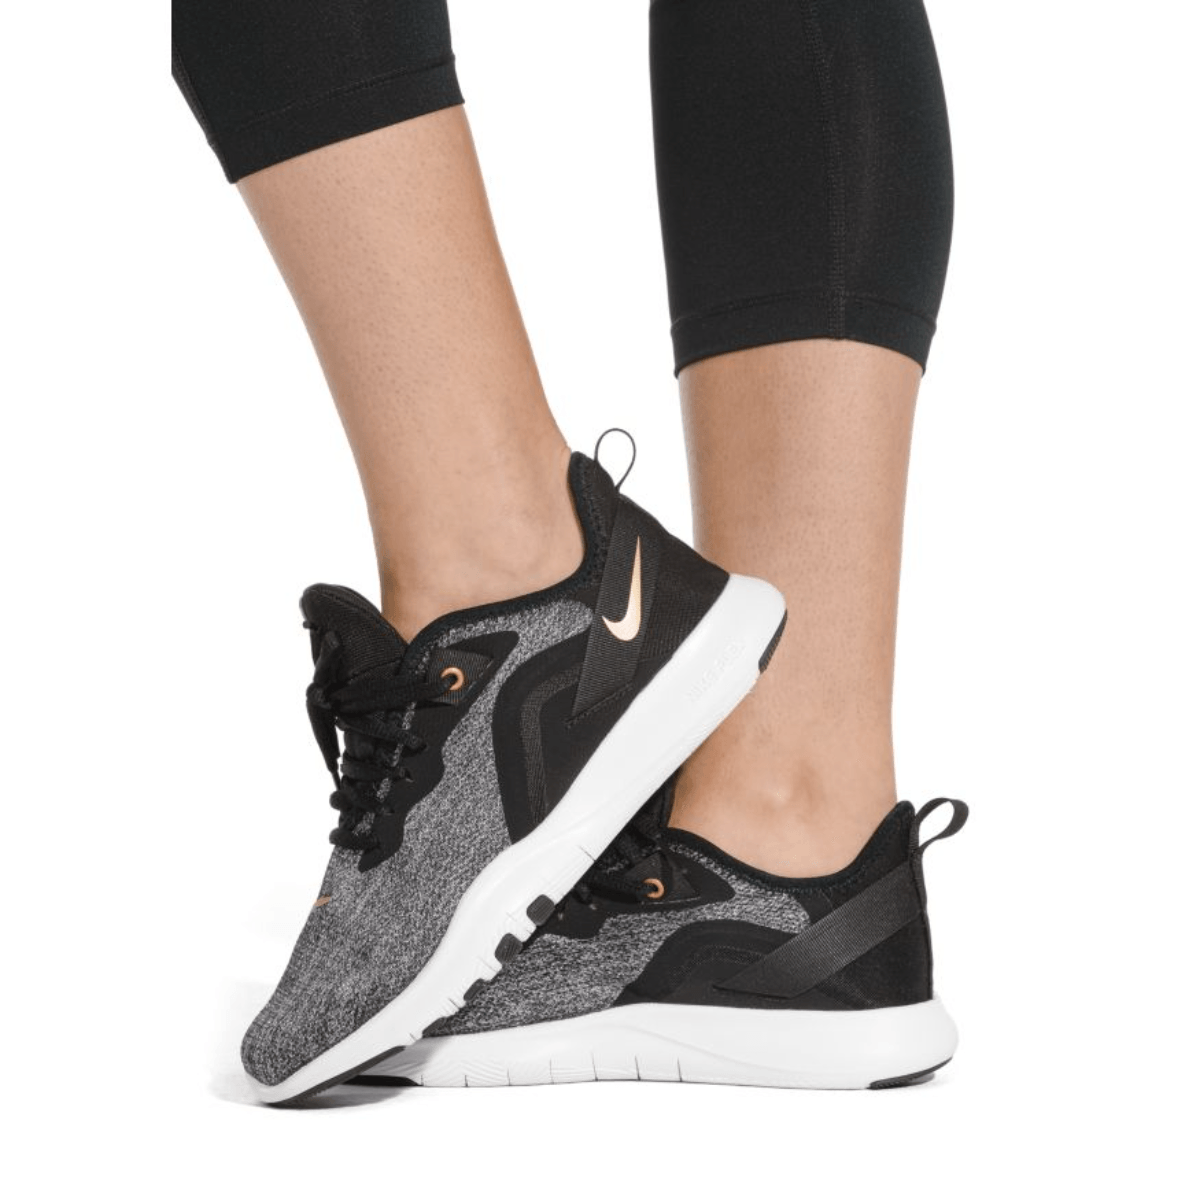 añadir expedición dos semanas Nike Flex TR 9 Training Shoe - Women's - Als.com